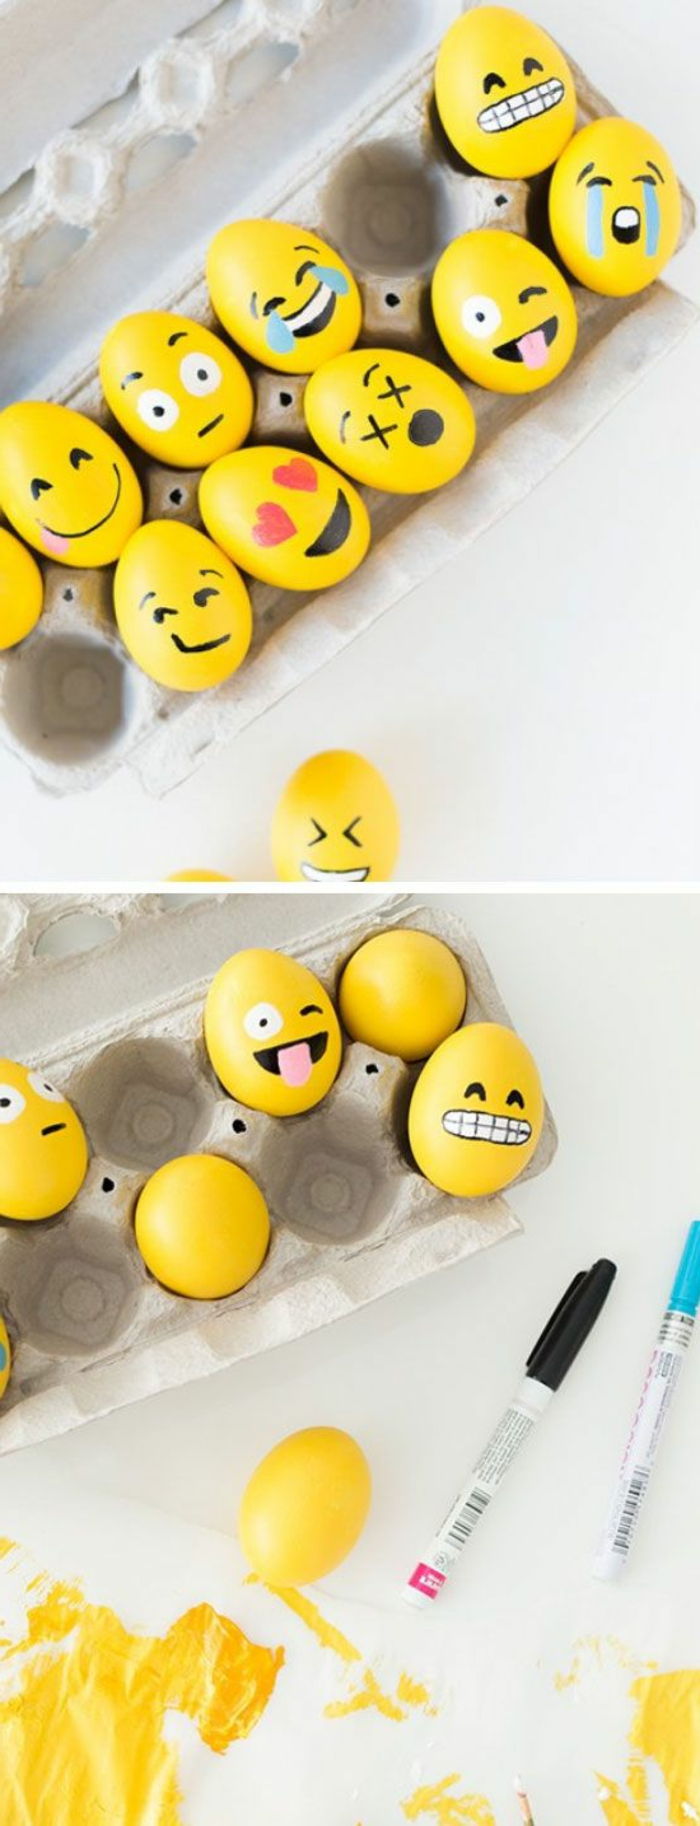 Pintar idéias para ovos de páscoa amarelos com emojis - diferentes olhares